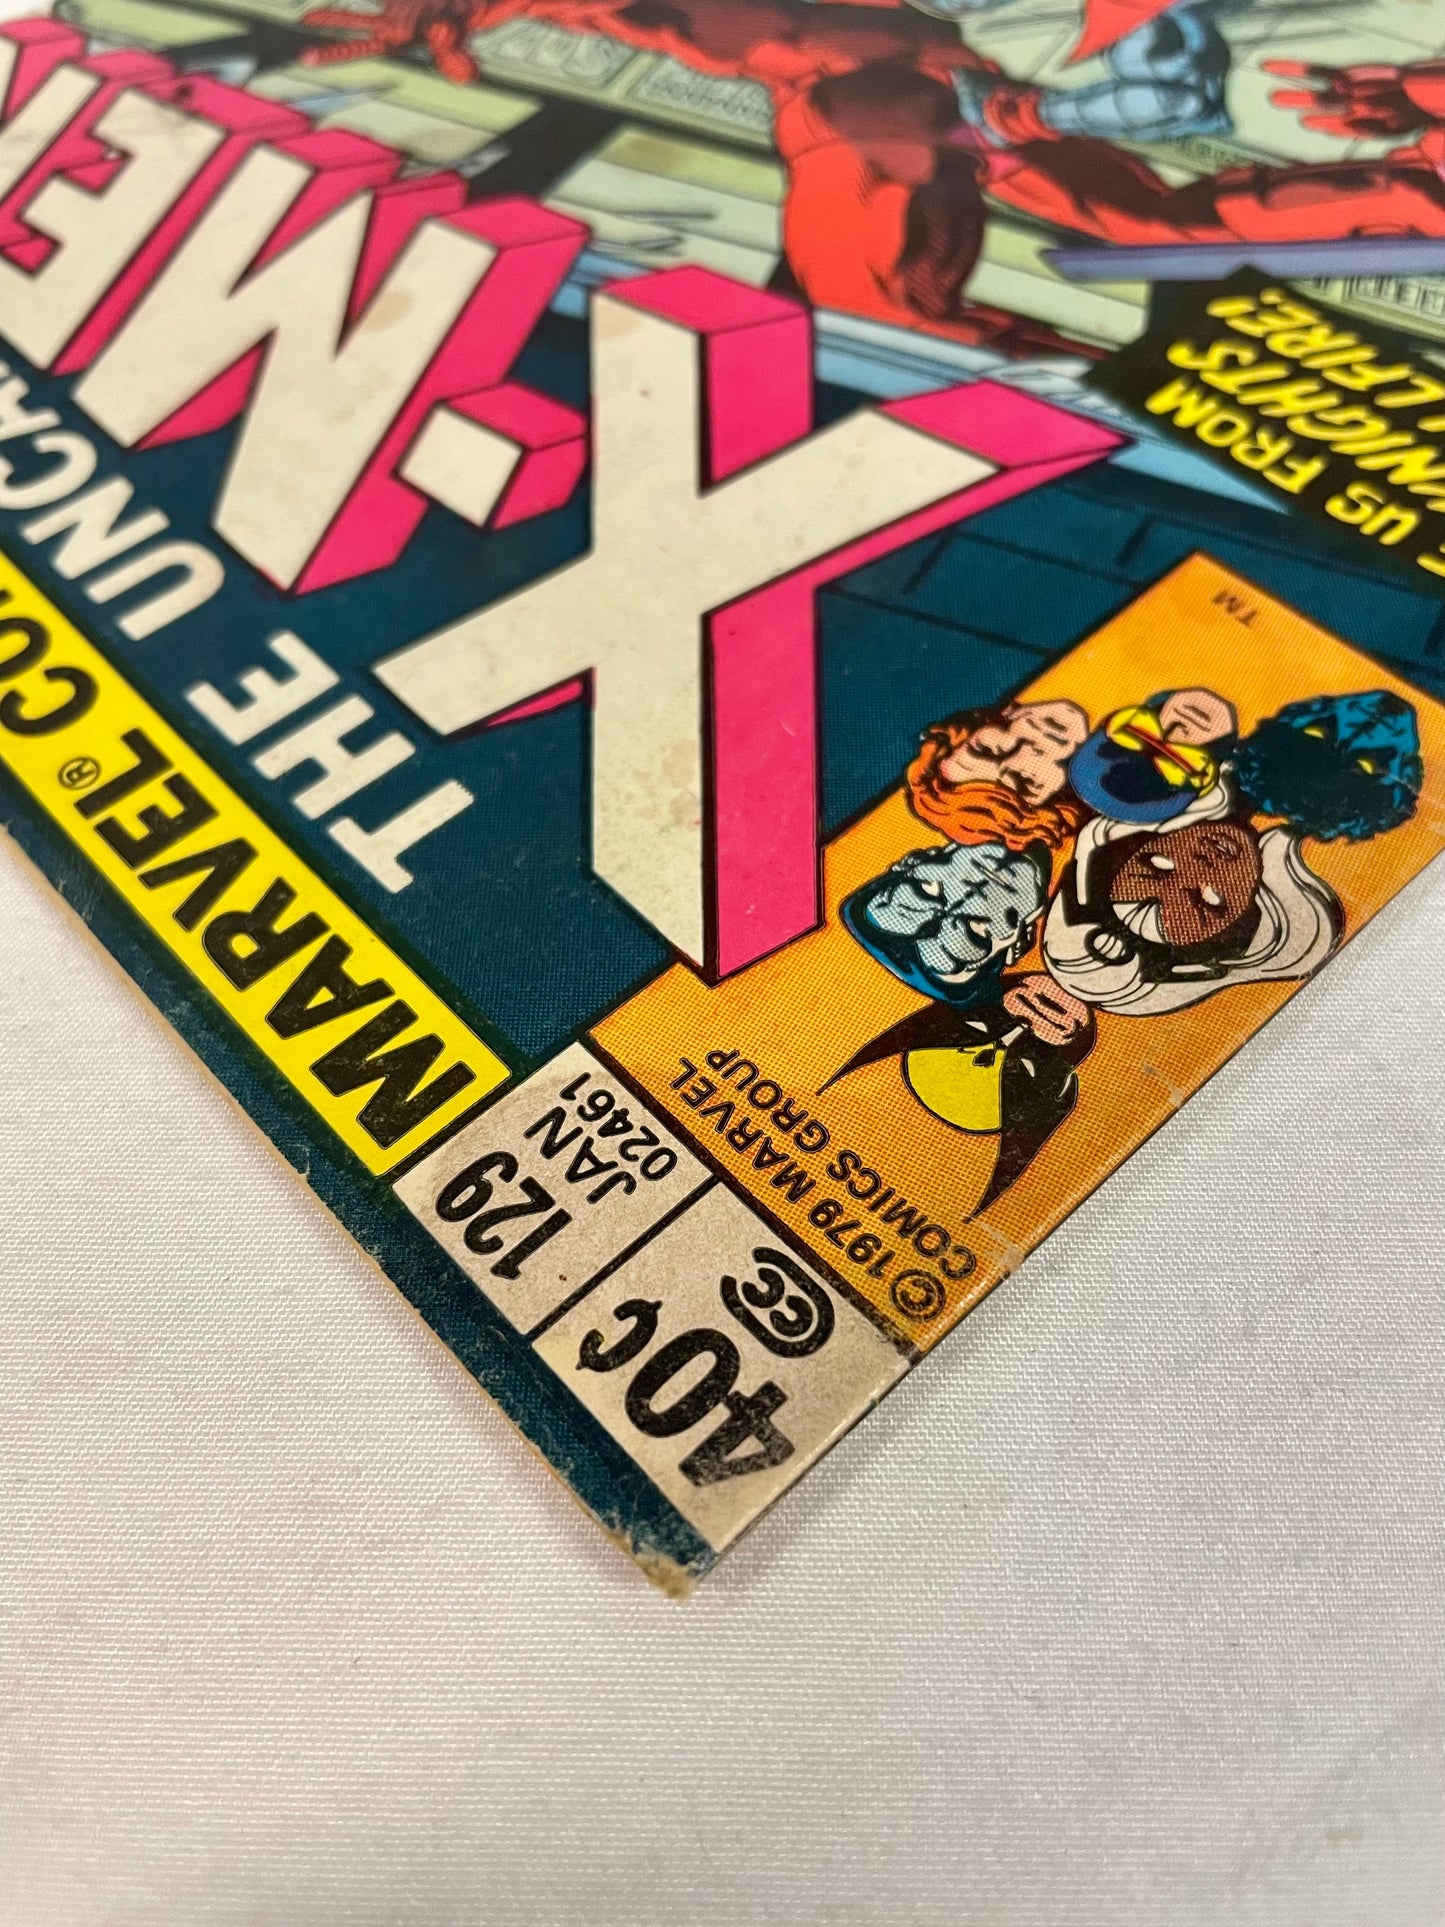 Marvel Comics The Uncanny X-MEN #129